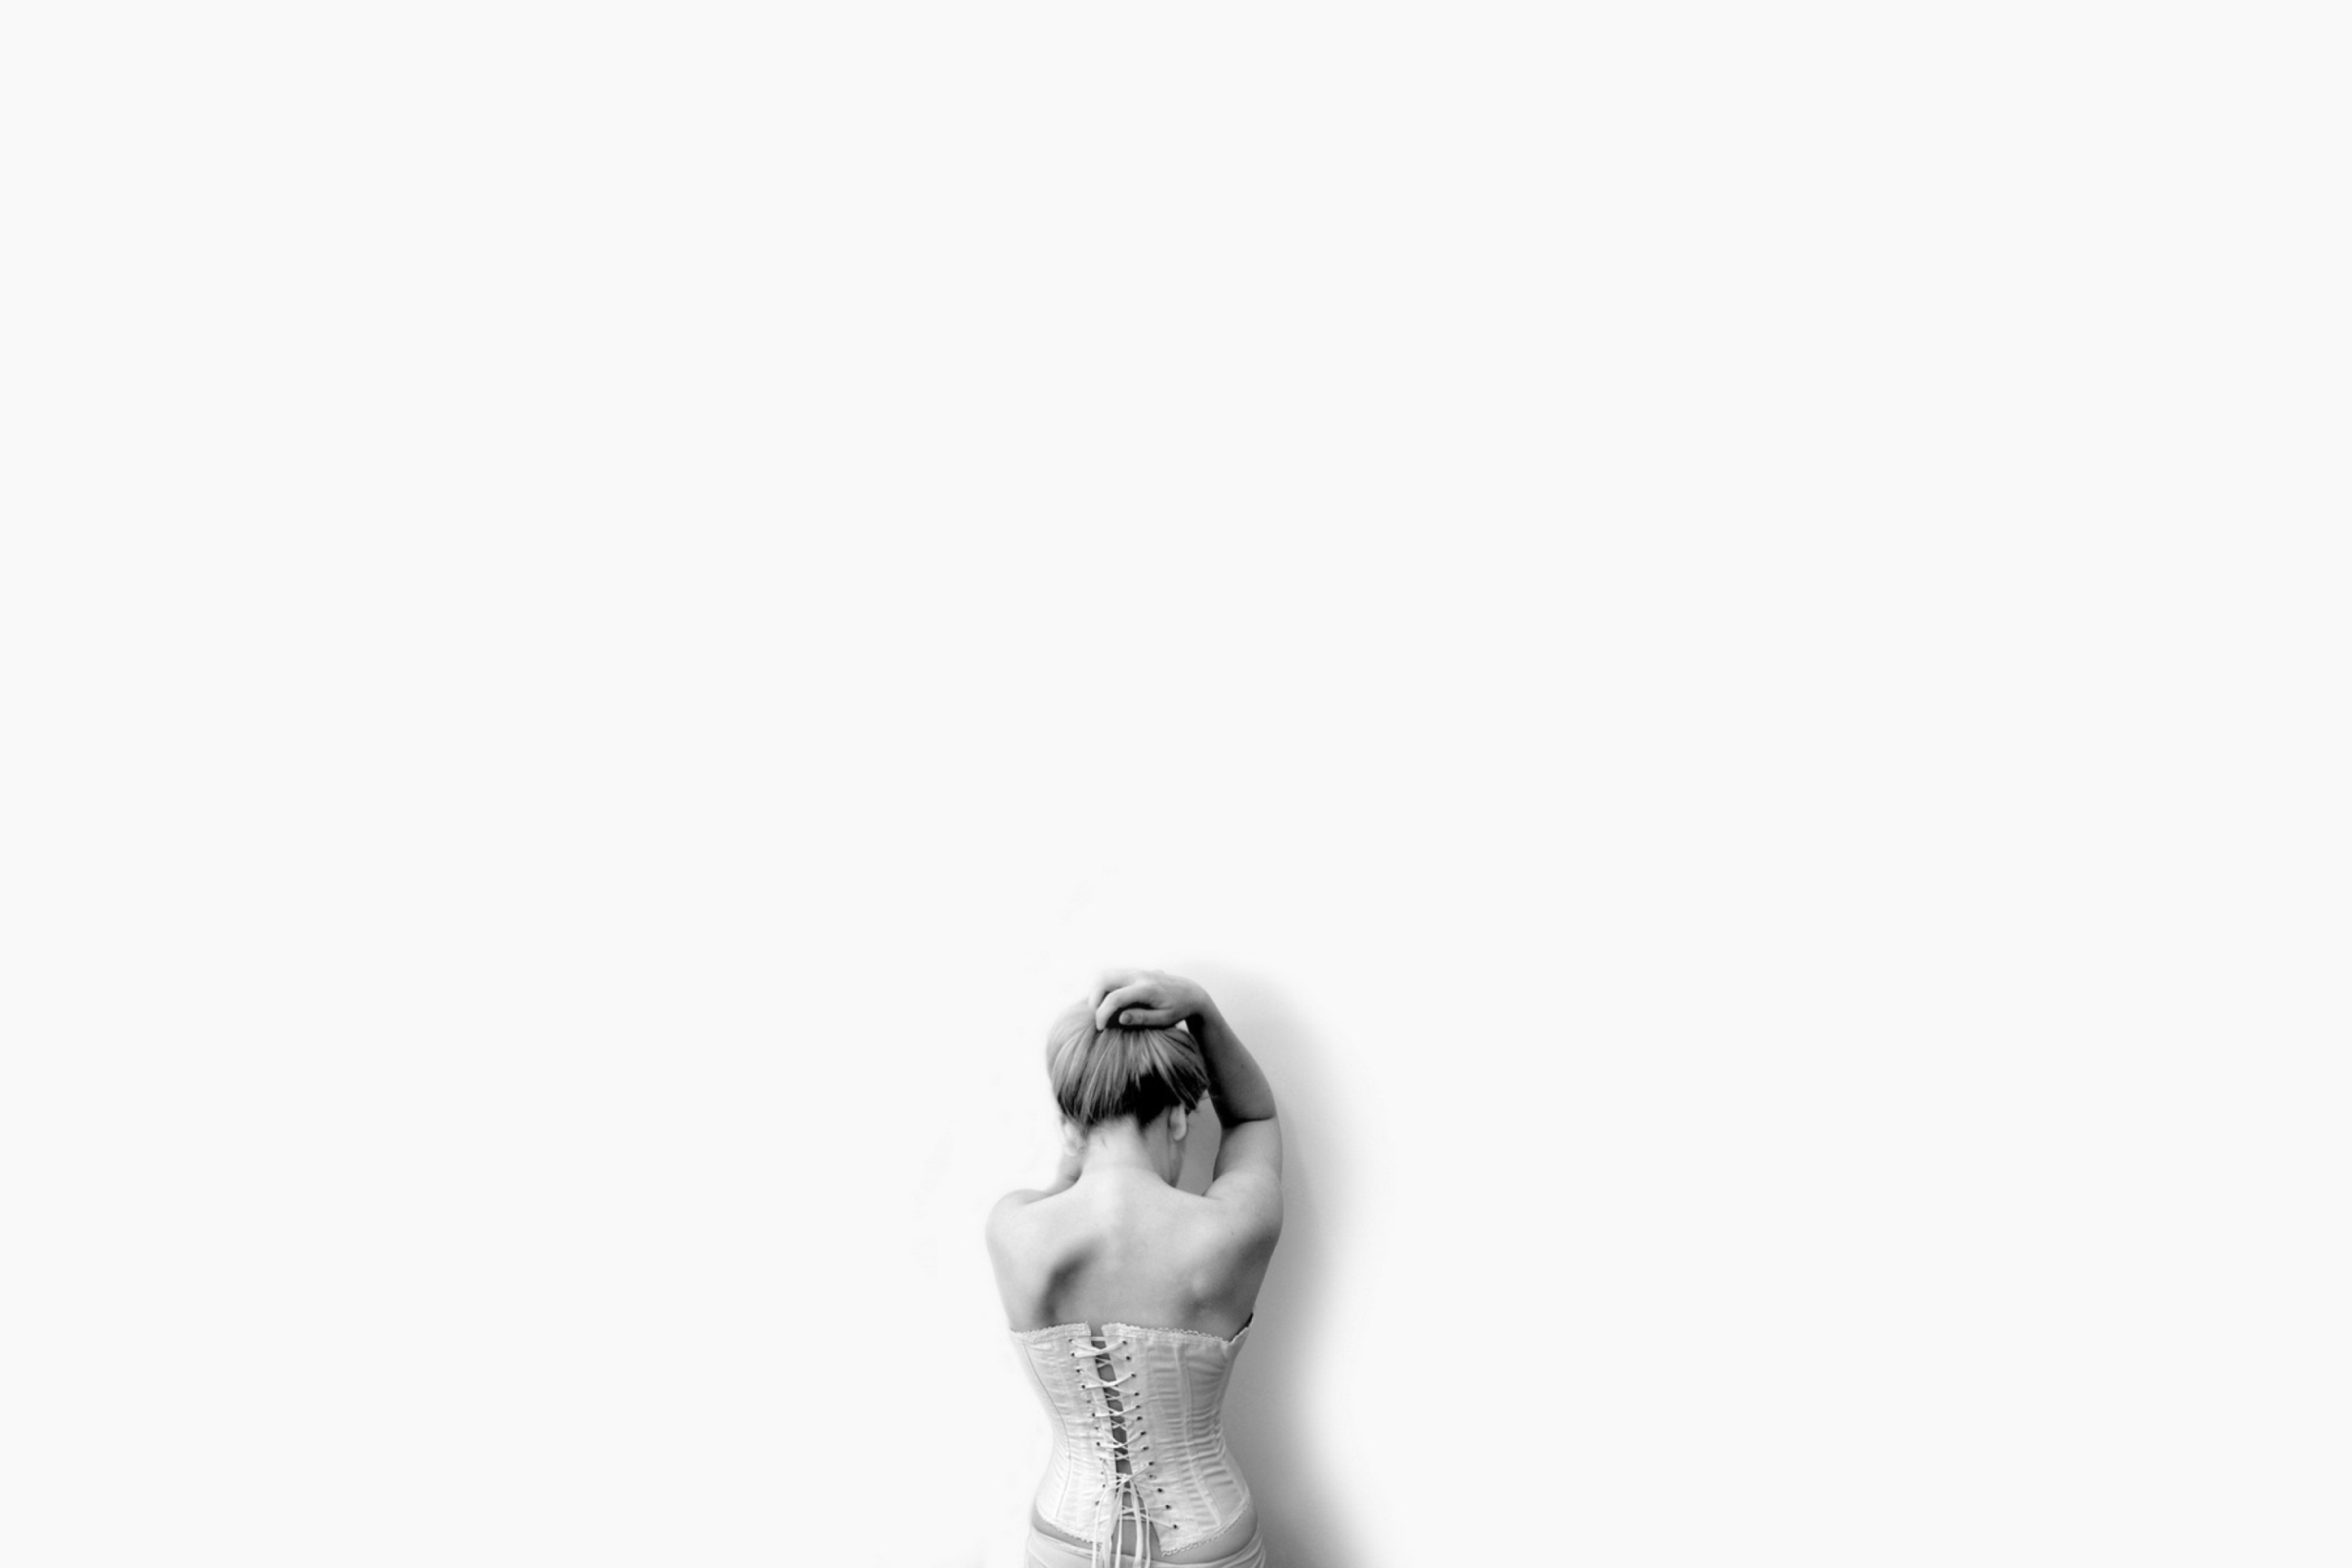 Das White Sadness Wallpaper 2880x1920